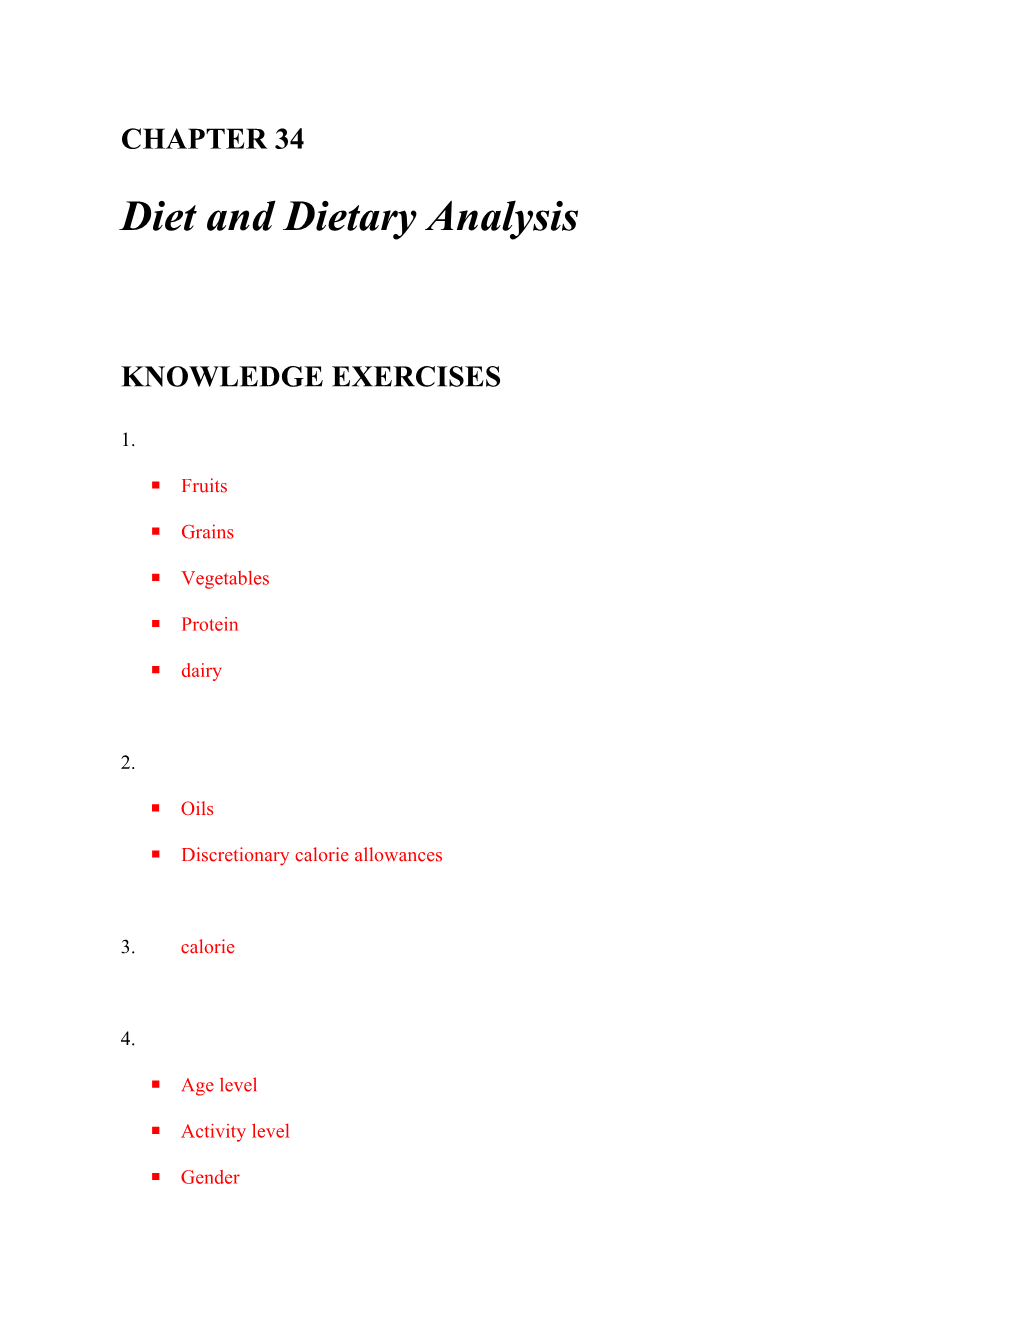 Diet and Dietary Analysis